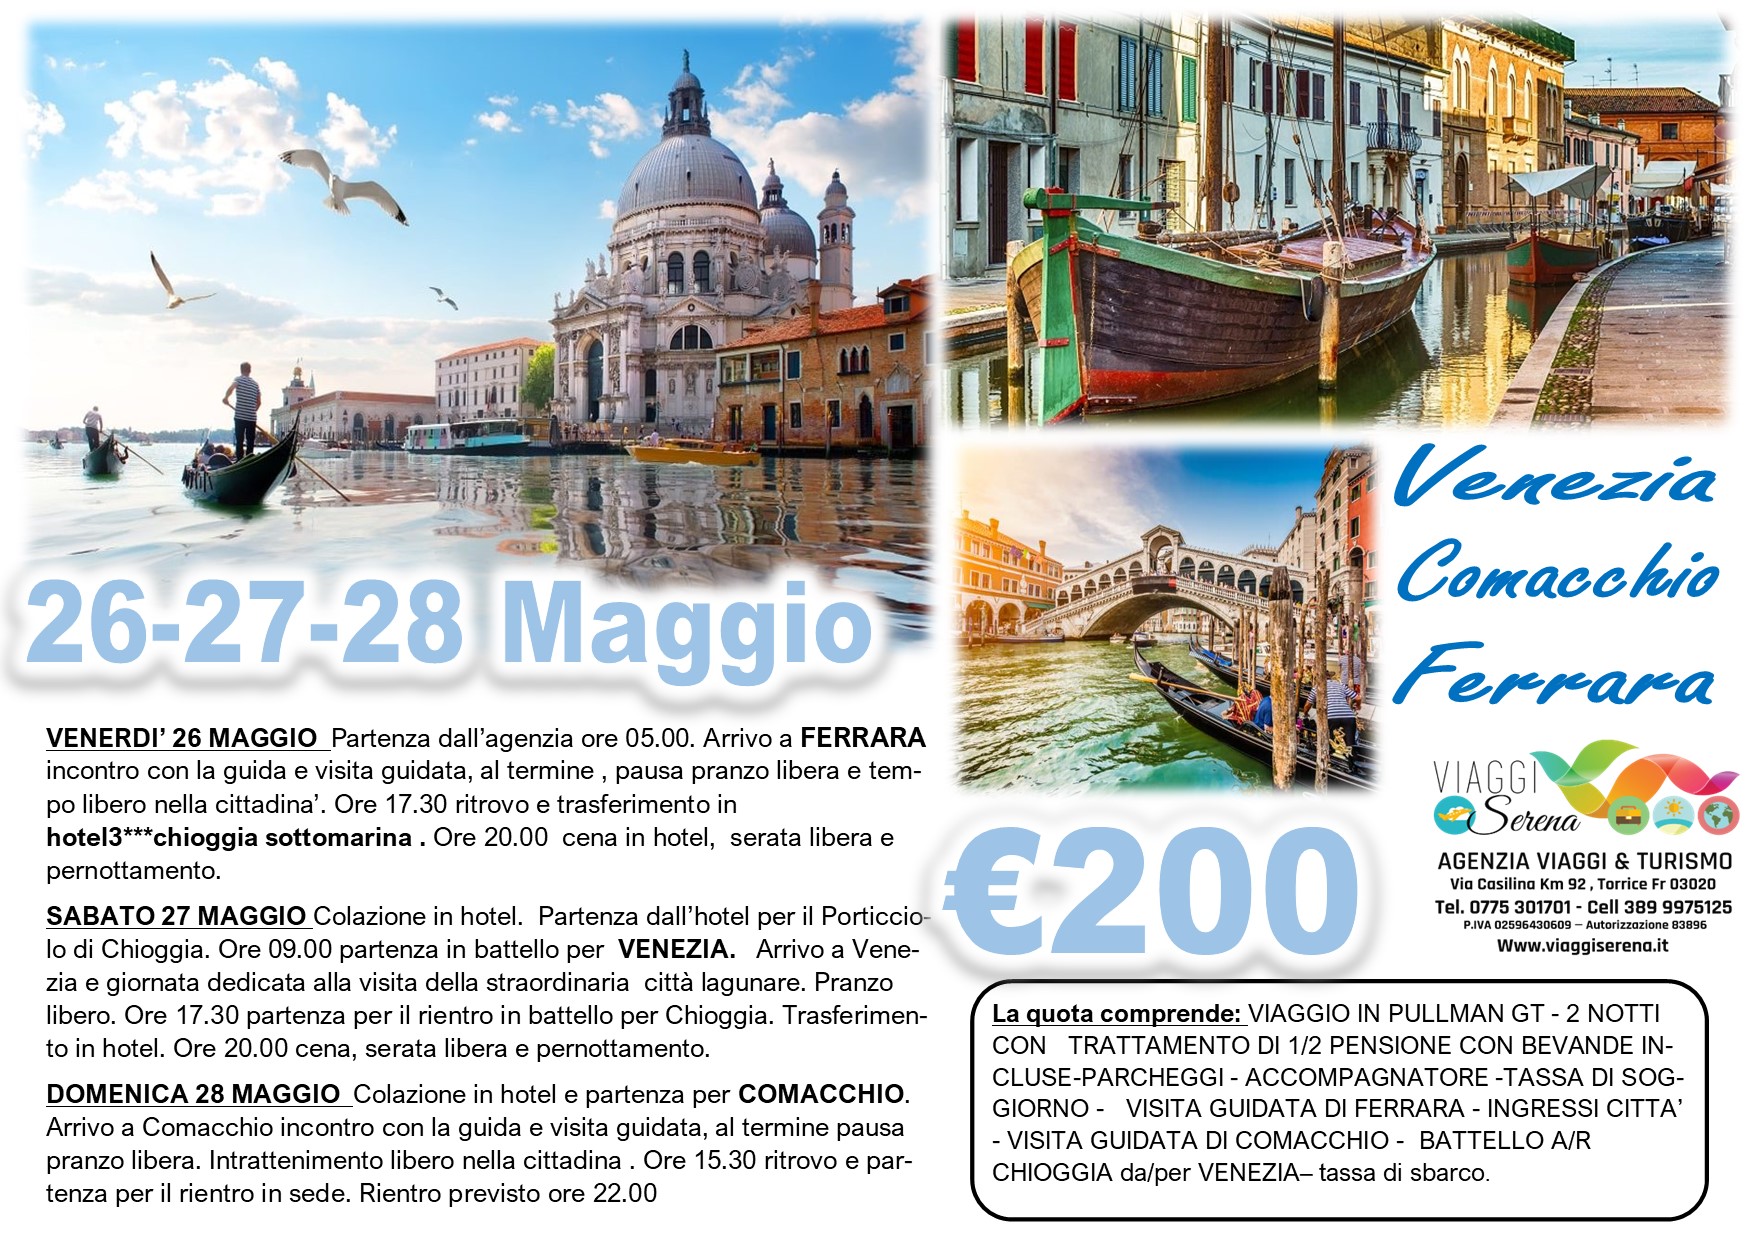 Viaggi di Gruppo: Venezia, Comacchio & Ferrara 26-27-28 Maggio  € 200,00